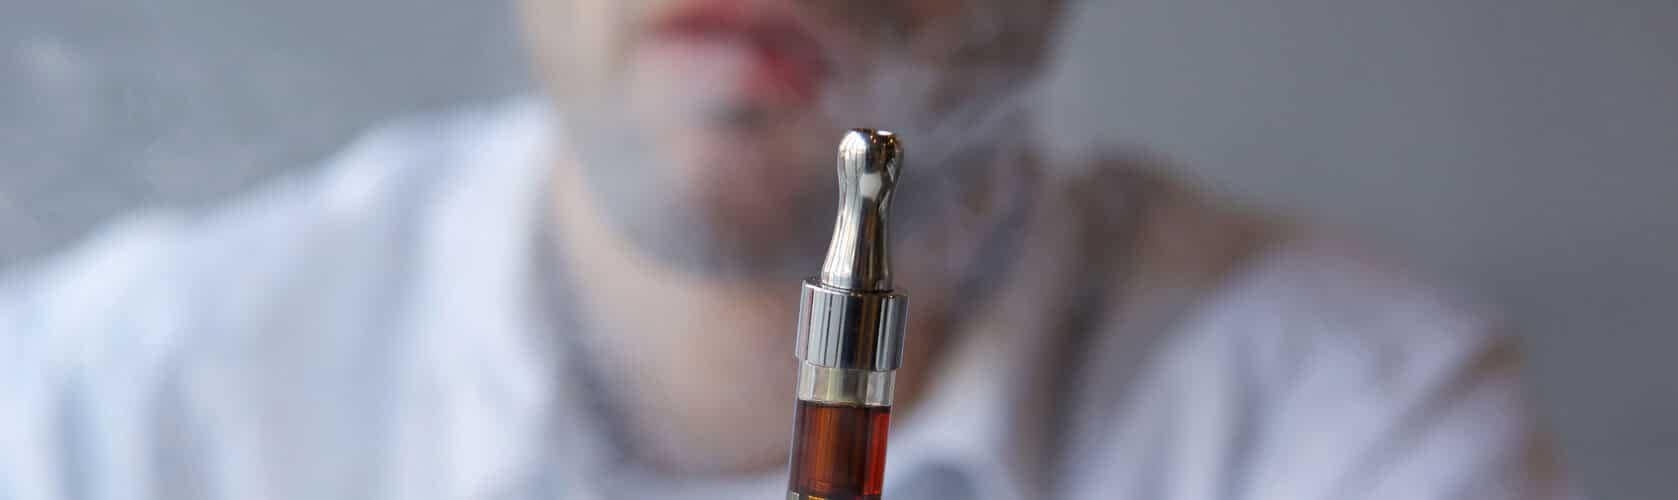 e-cigarette litigation